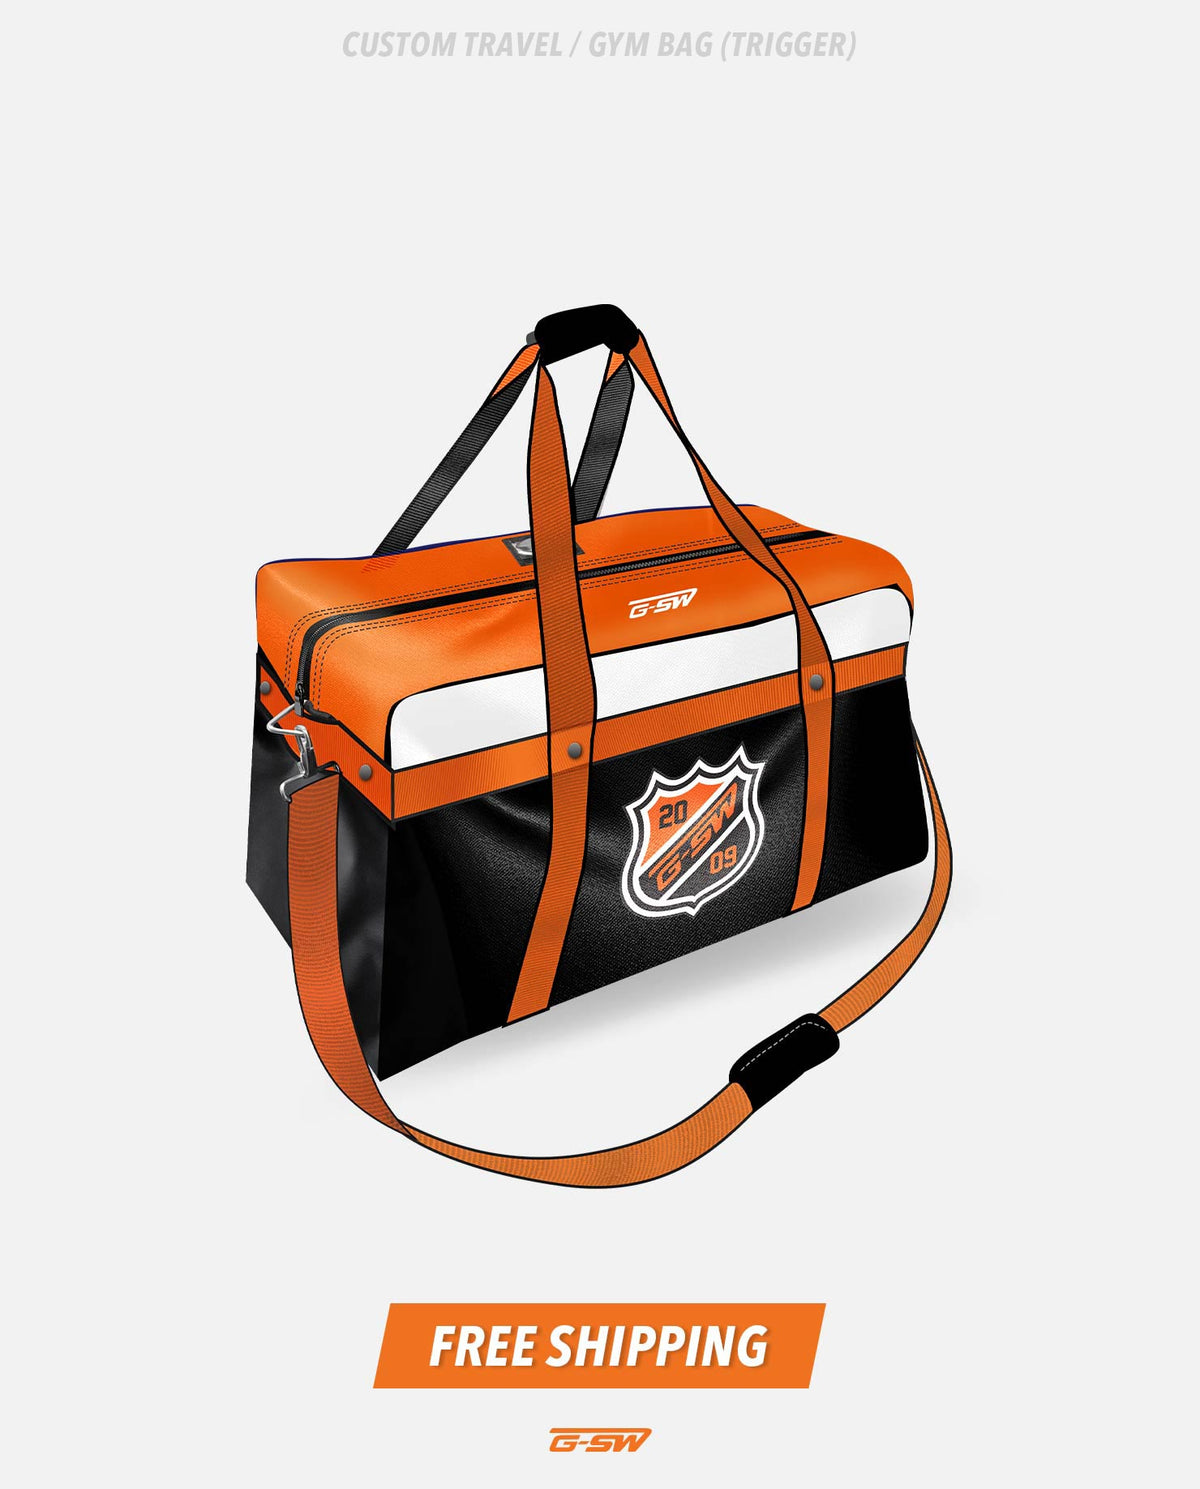 GSW Custom Travel/Gym Bag (Trigger)